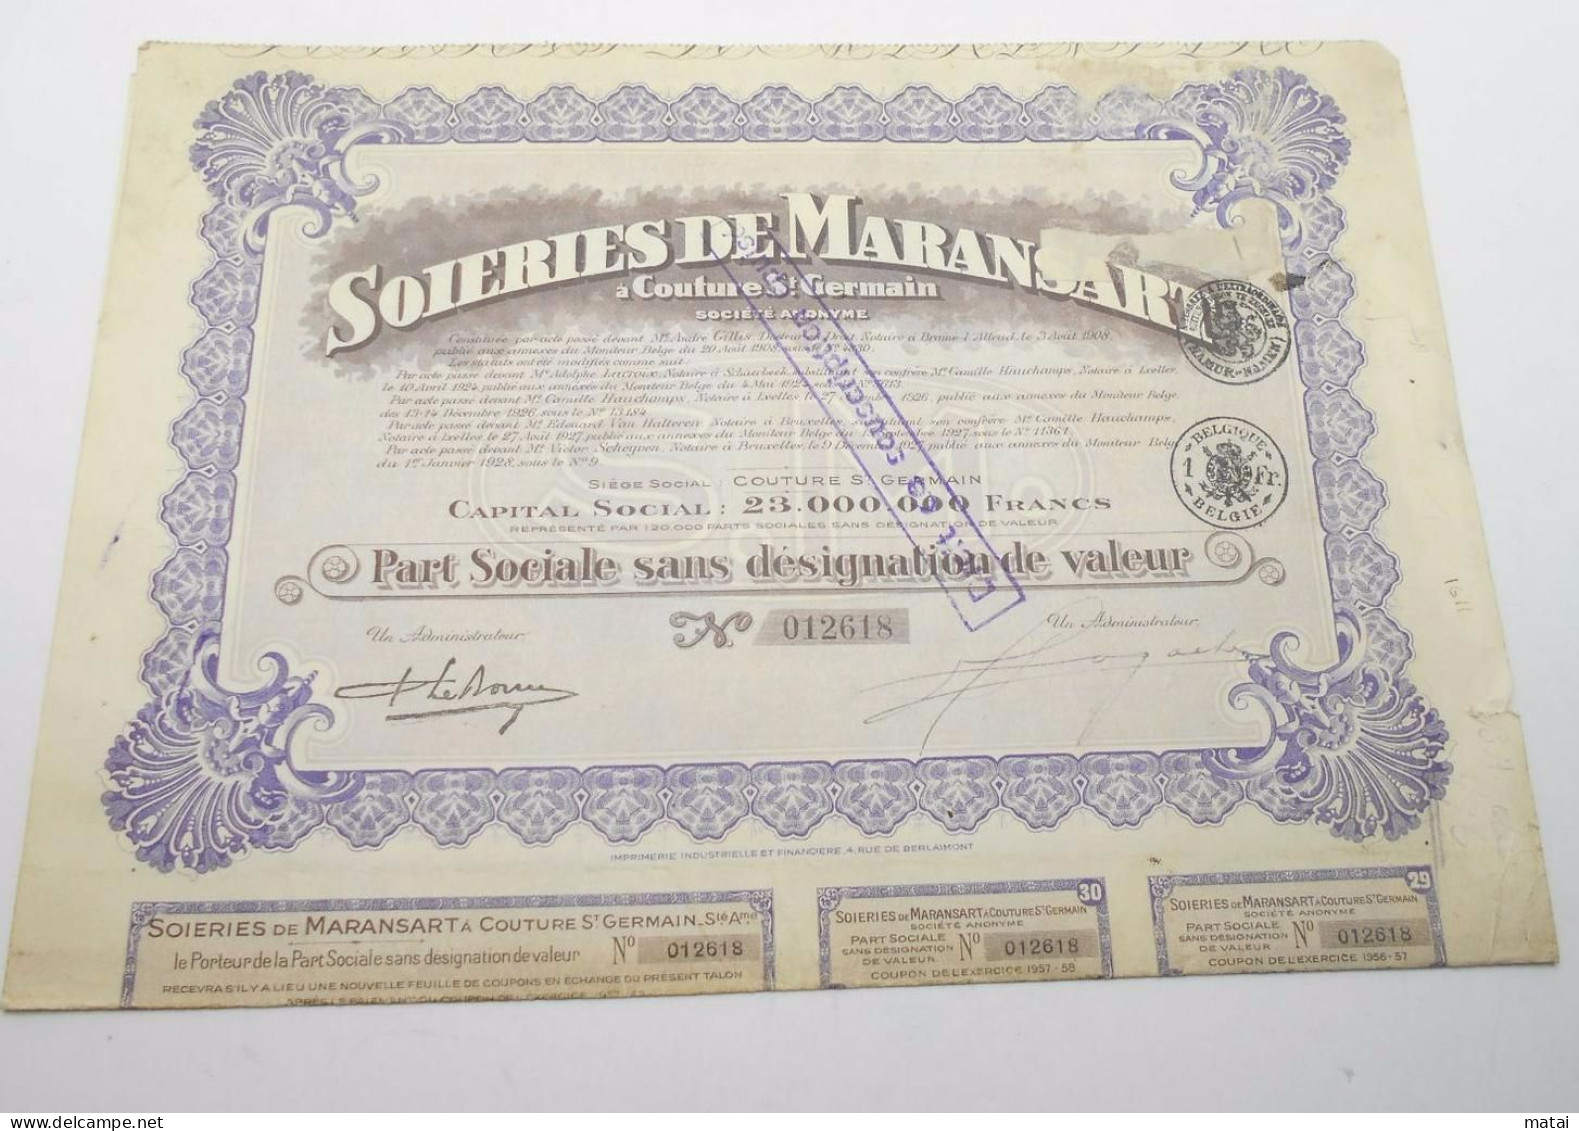 Part Sociale " Soieries De Maransart " Couture St Germain 1928 Soie Textile ,avec Tous Les Coupons N° 012618 - Textile